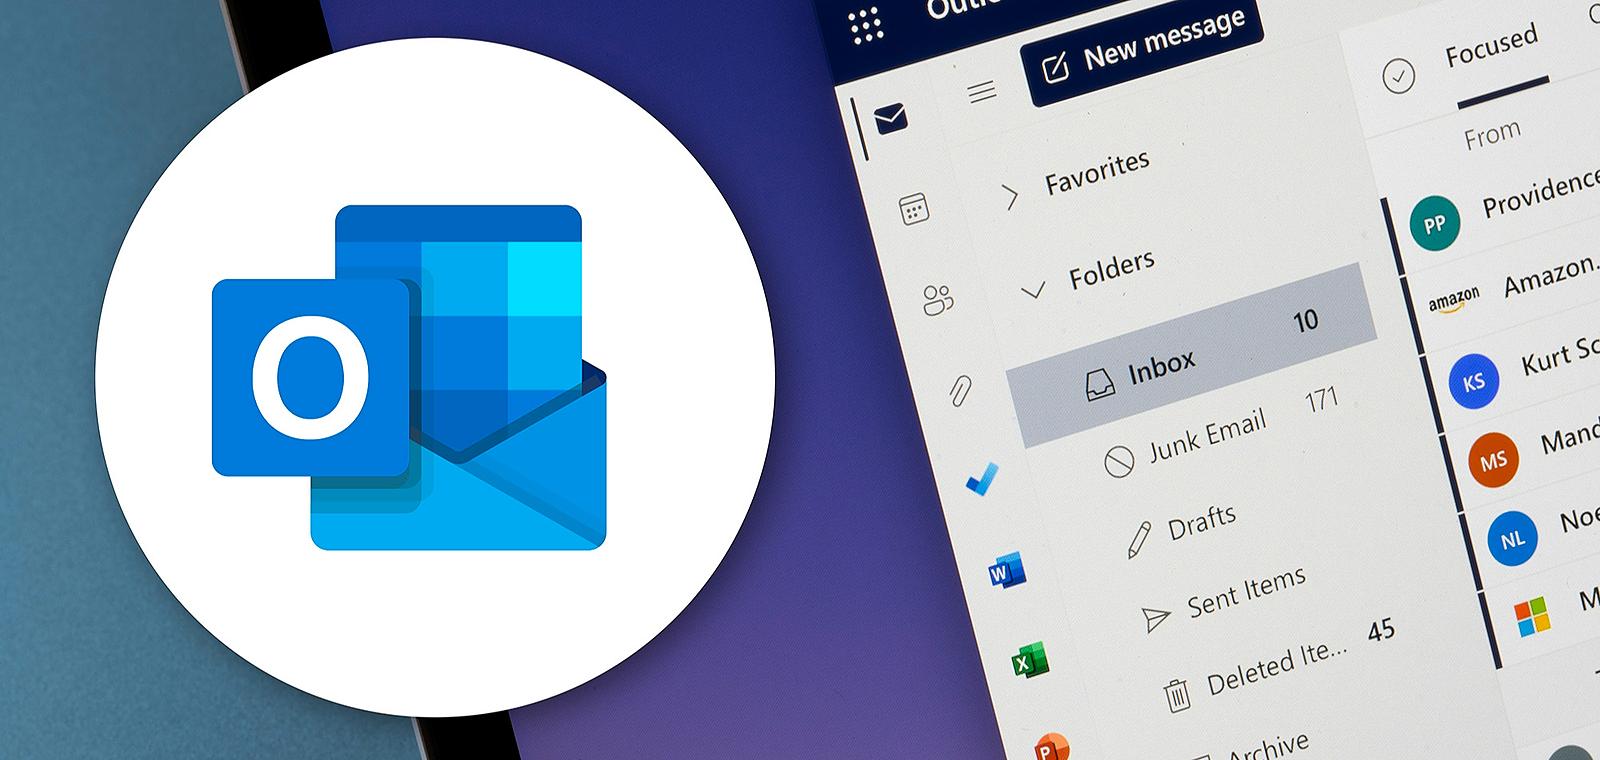 Comment avoir une gestion efficace de votre boite mail Outlook ?